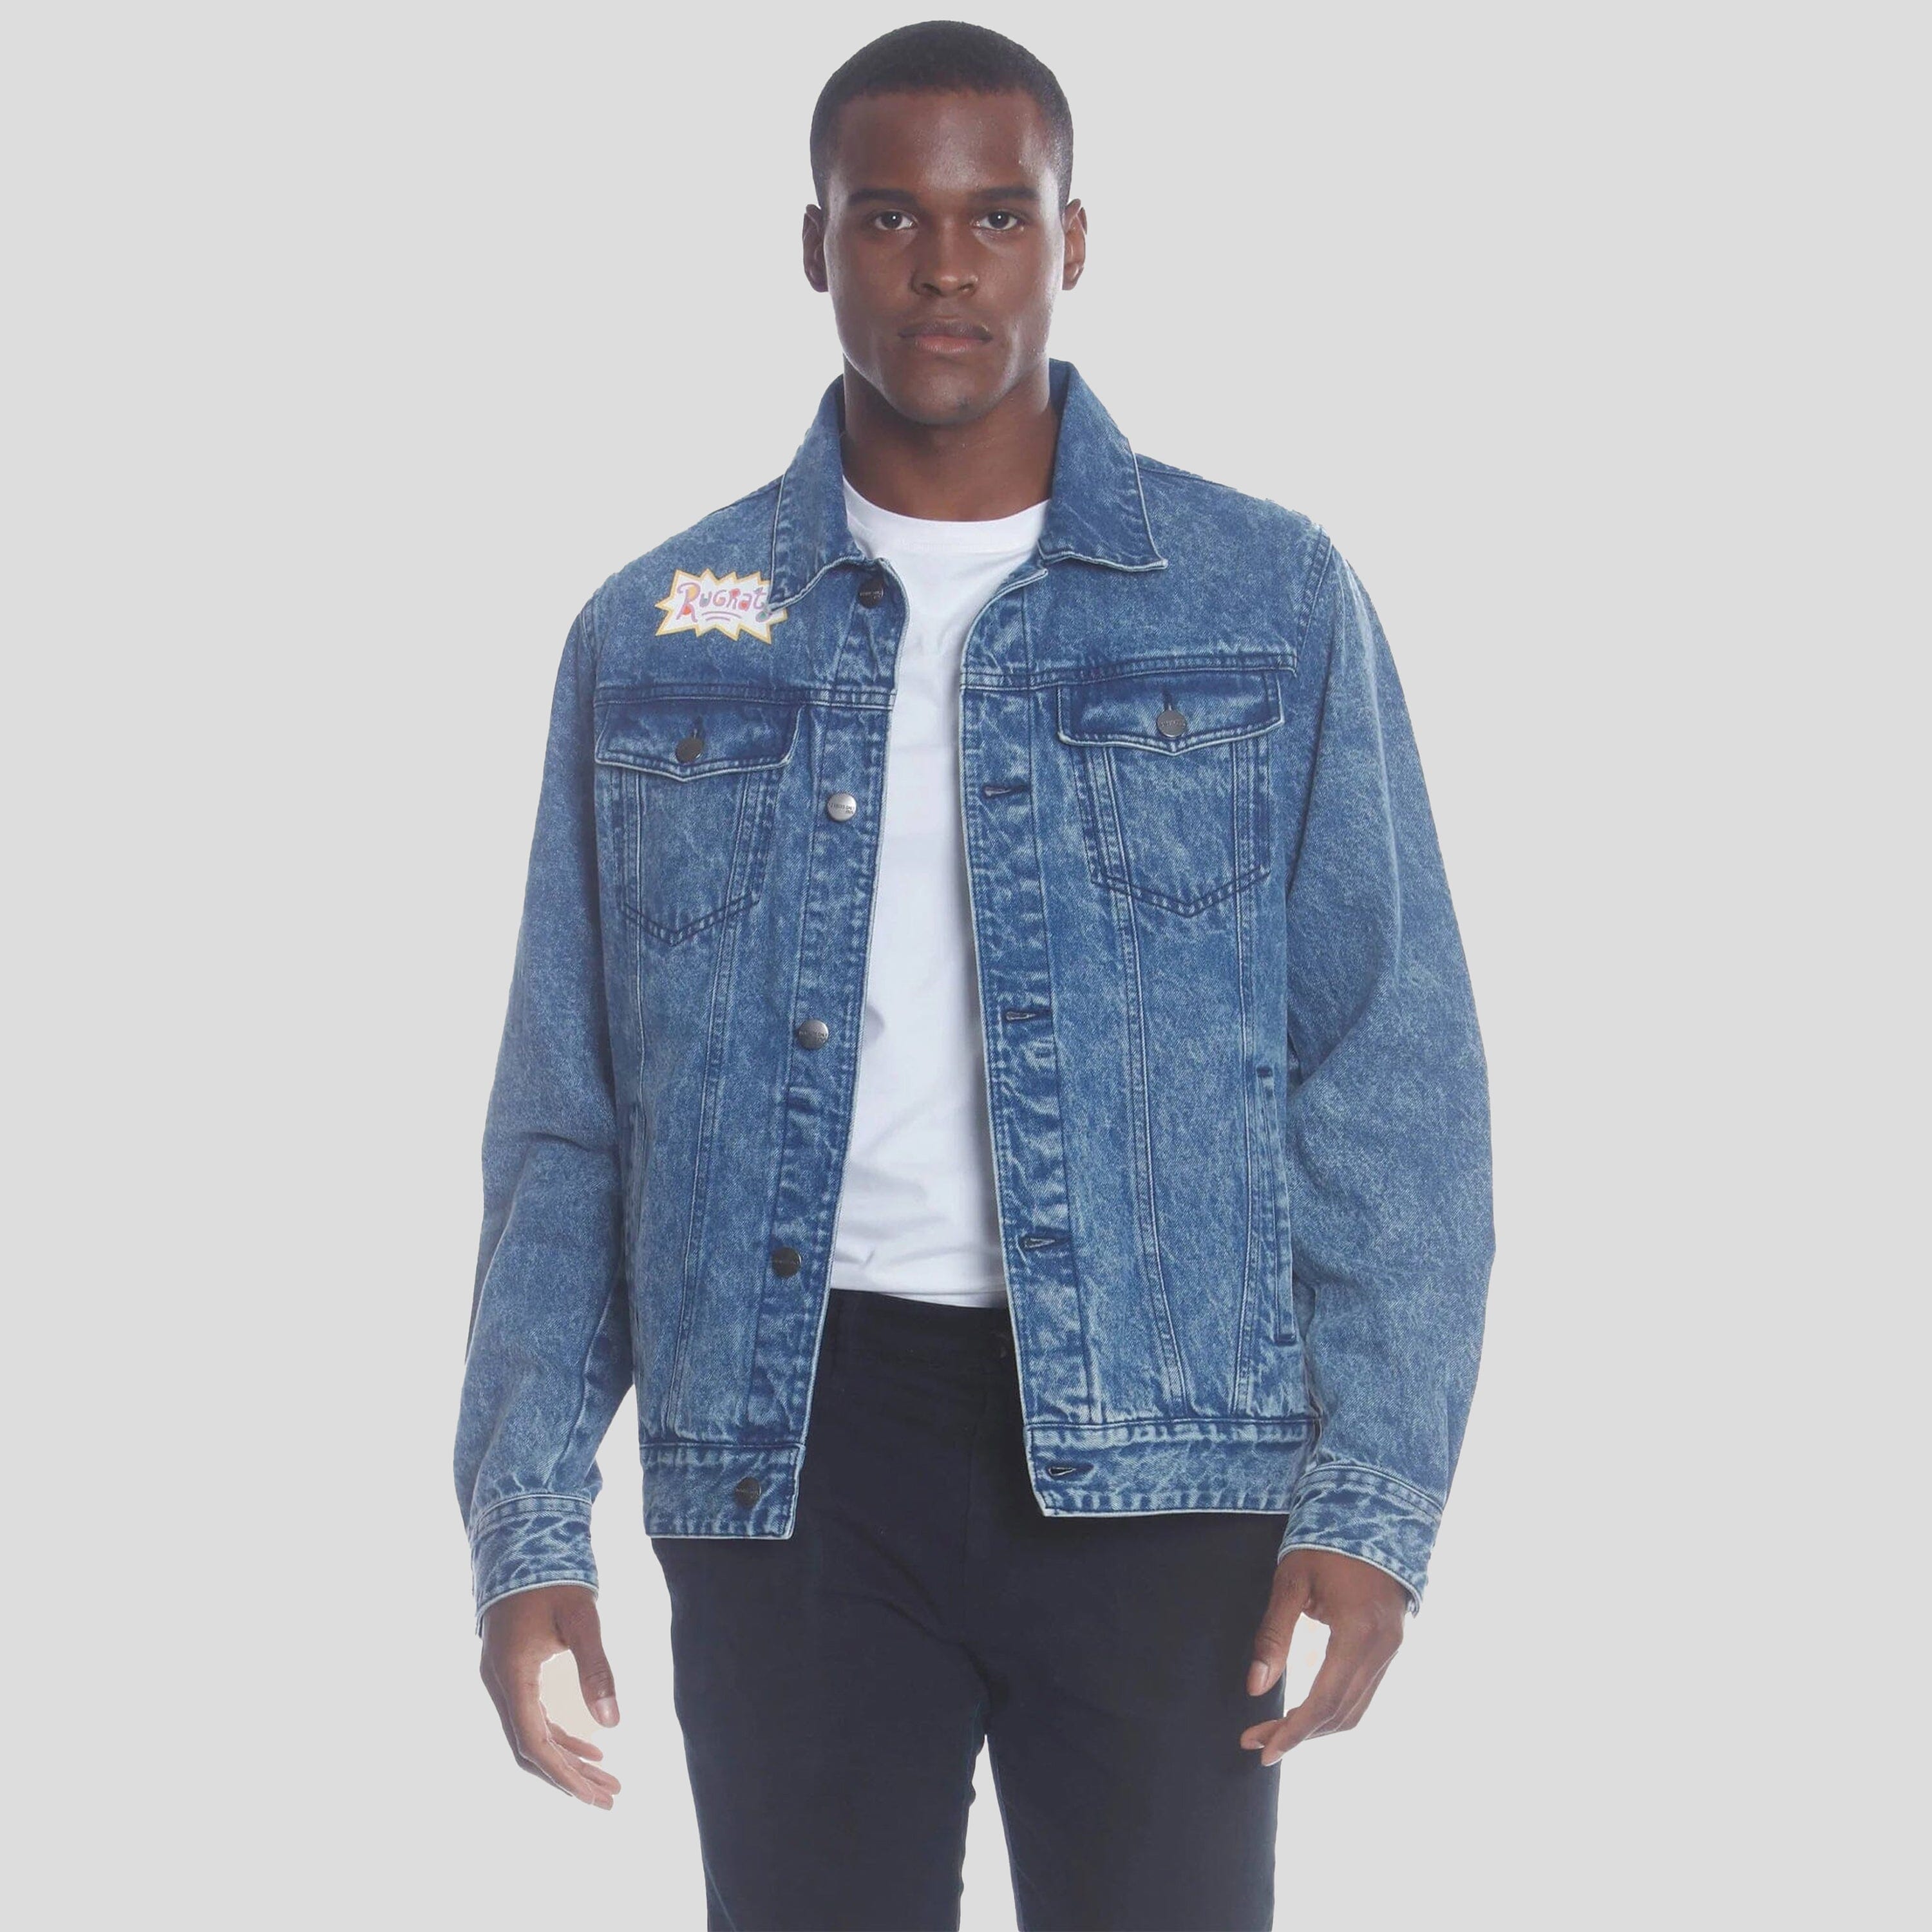 Shop Calvin Klein Jeans Trucker denim jacket on Rinascente